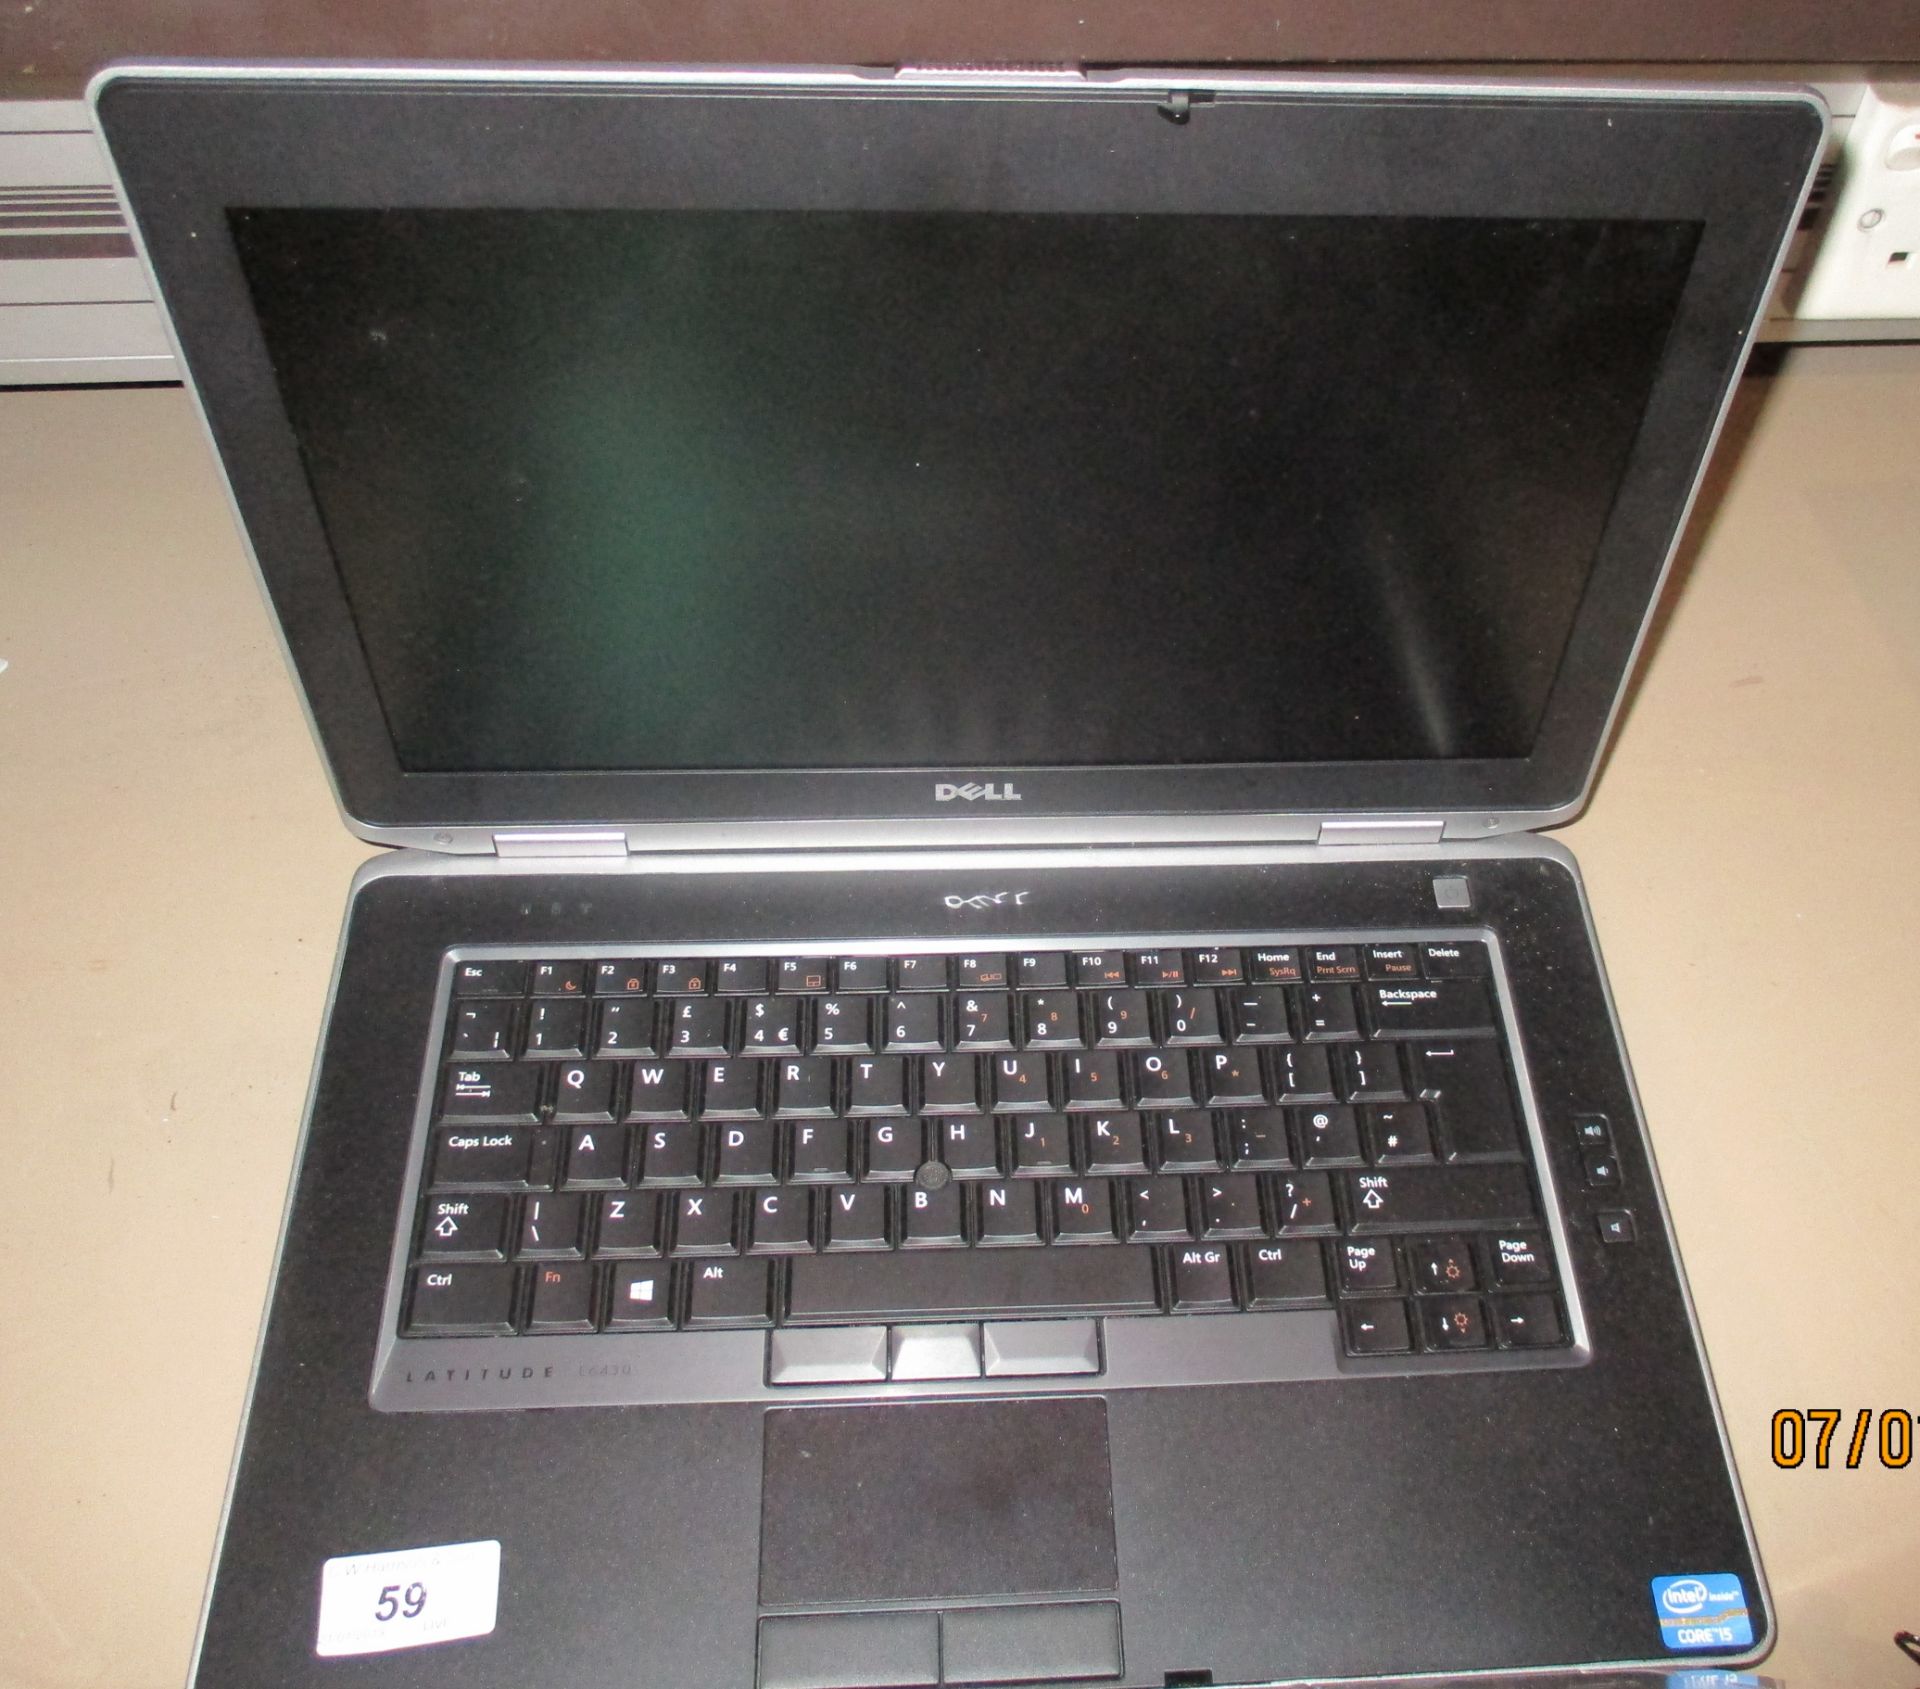 A Dell Latitude E6430 laptop computer - no power lead